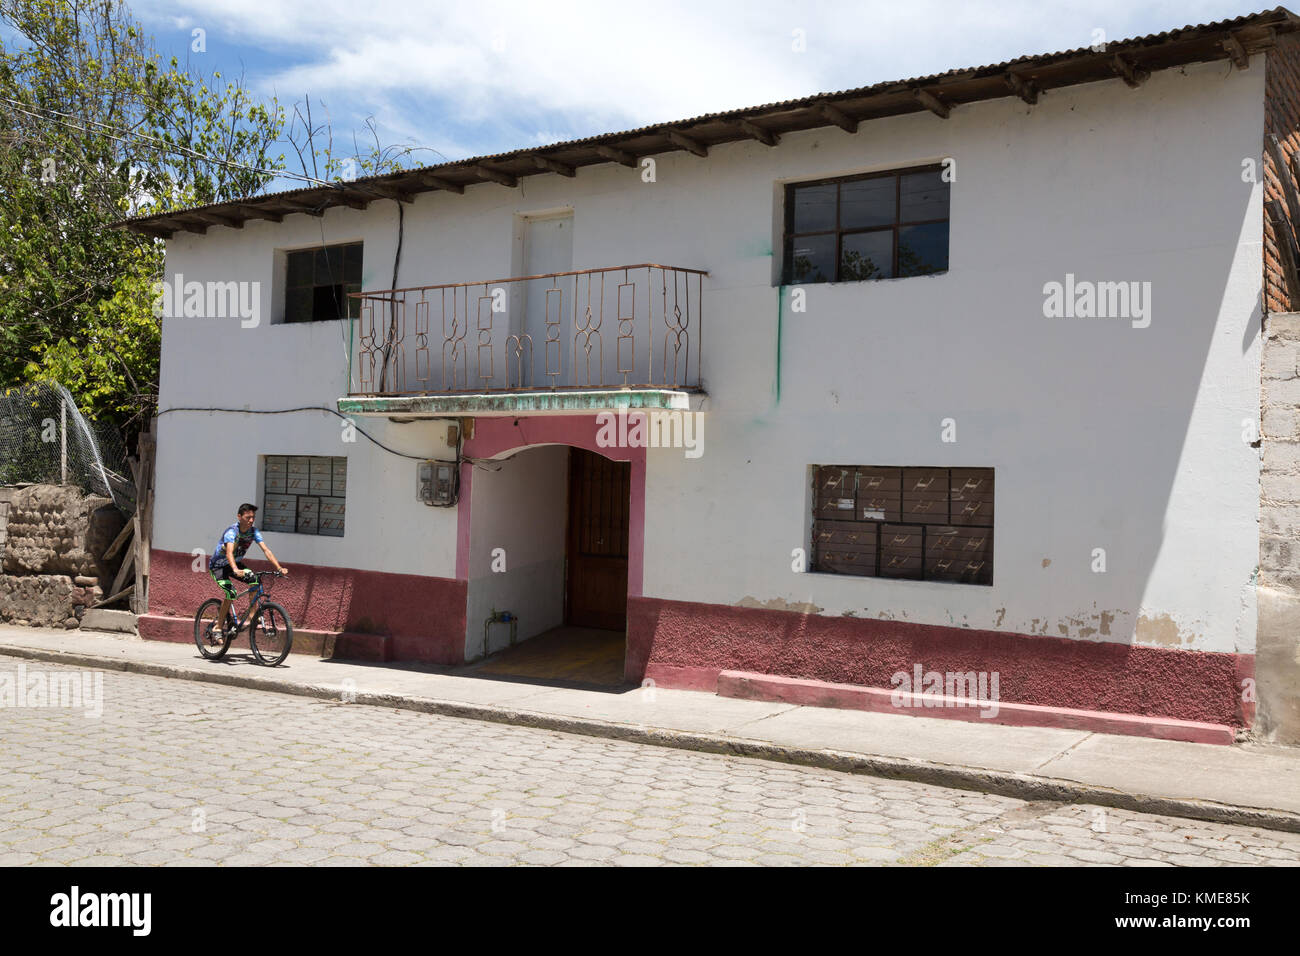 Ecuador house, Tumbabiro village, northern Ecuador, South America Stock Photo